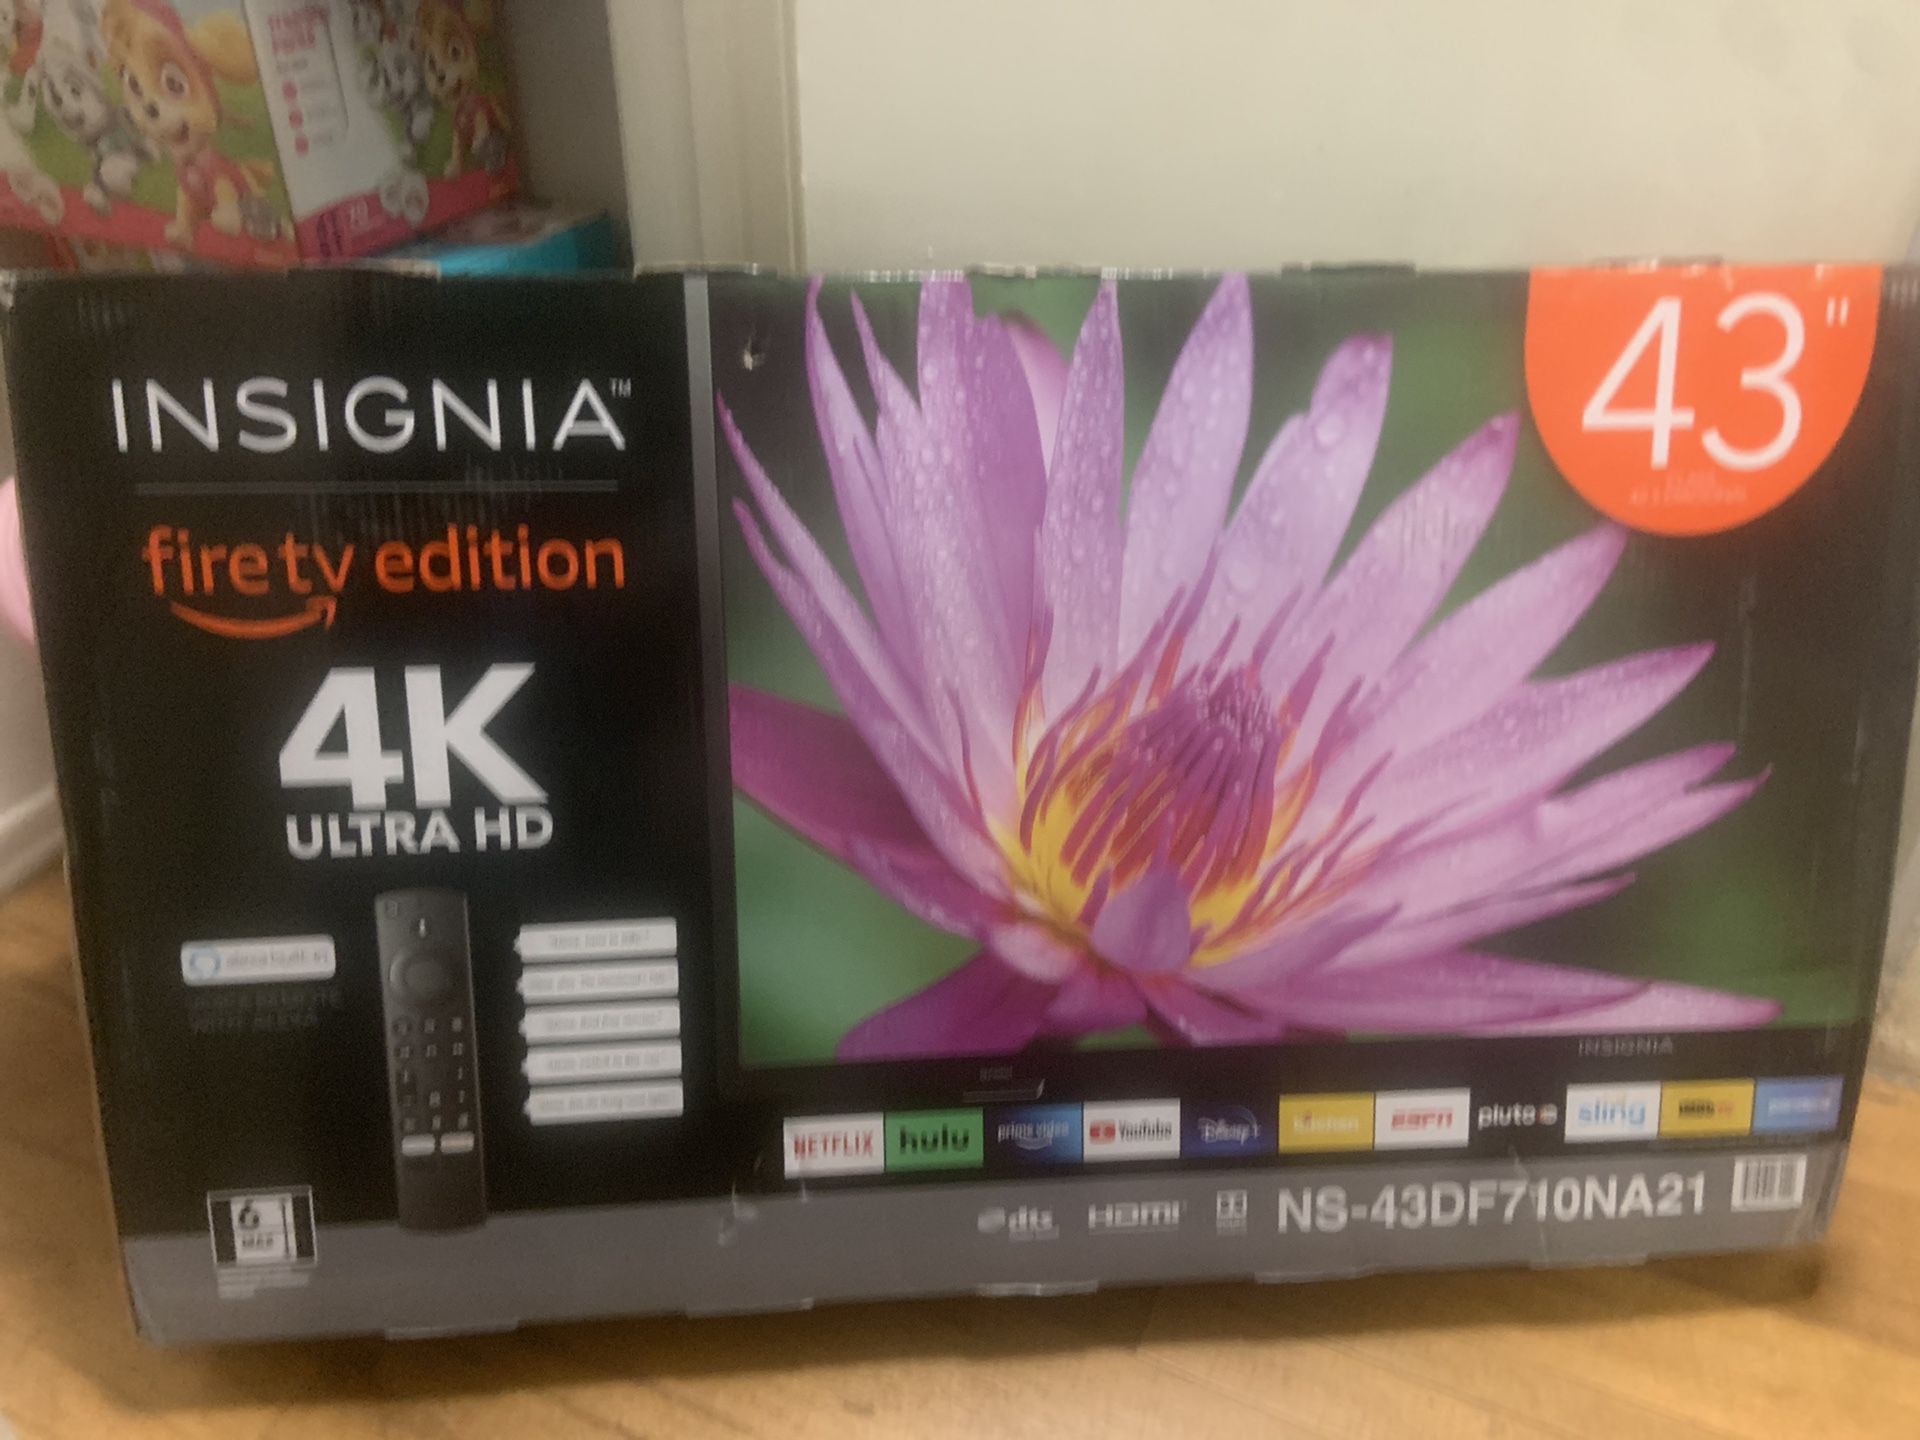 Insignia 43” fire tv 4K